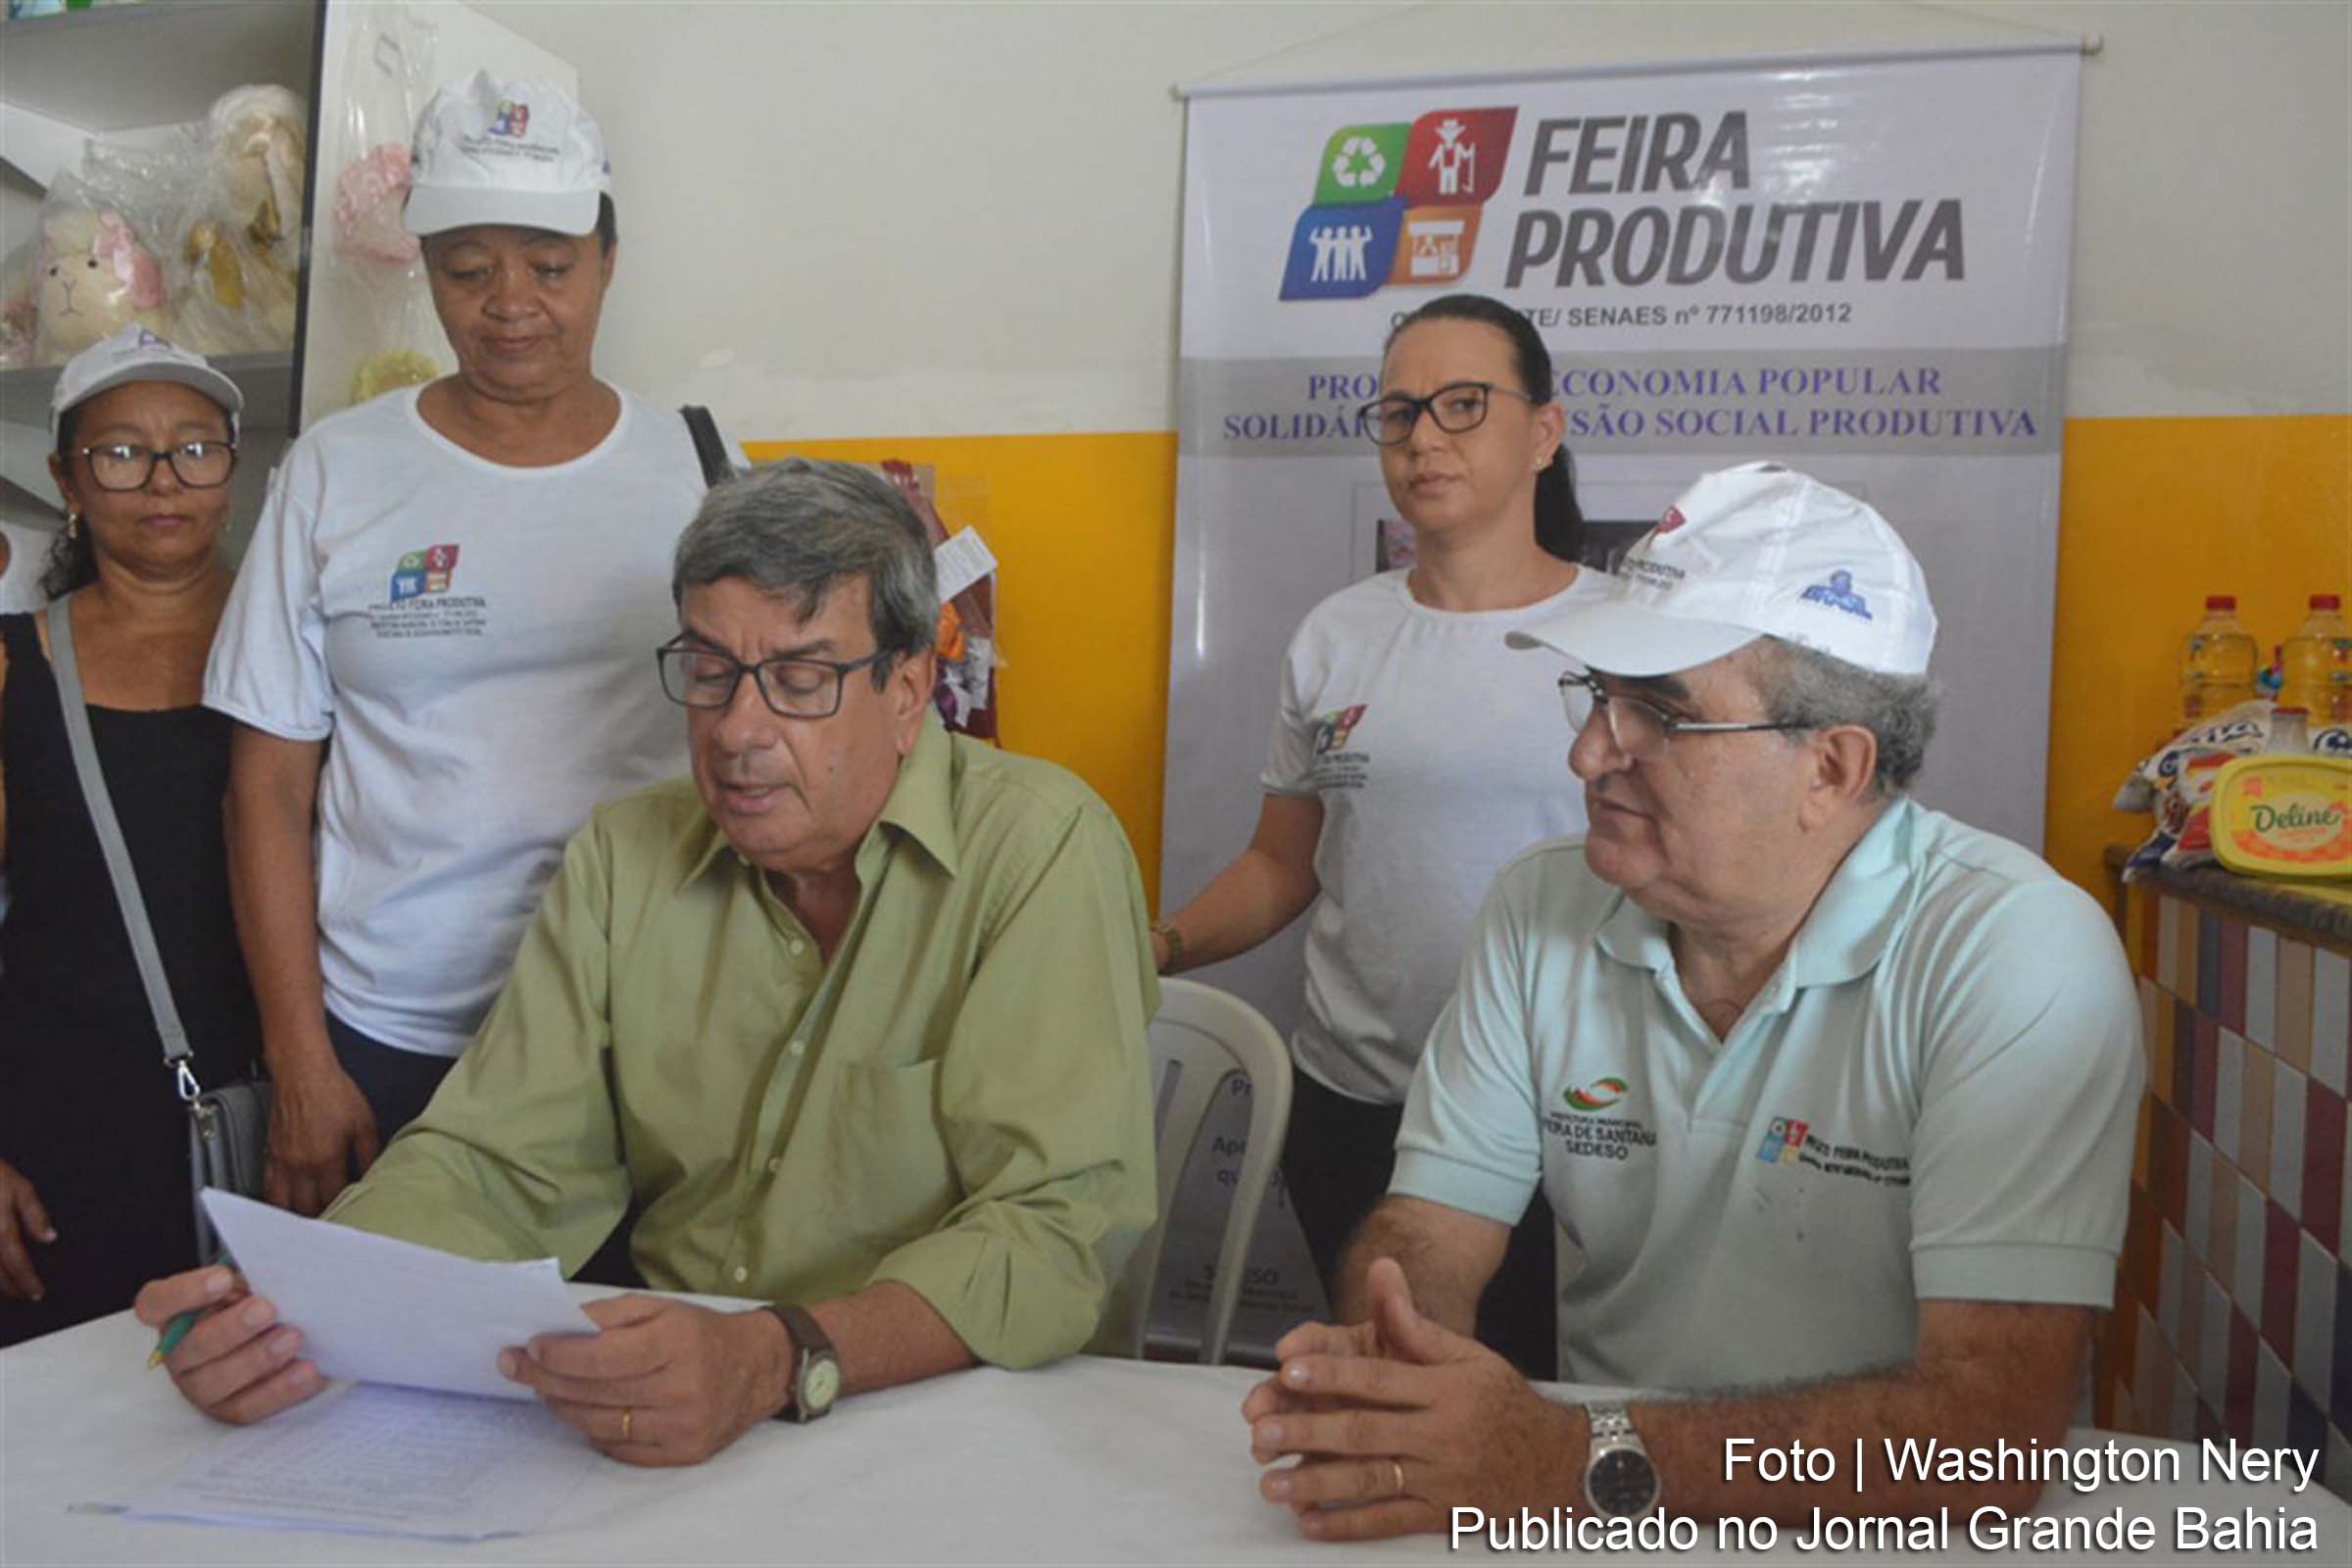 Convênio firmado pelo prefeito Colbert Martins Filho vai injetar R$ 24.702,54 mil na geração de renda em seis comunidades feirenses por meio de associações.